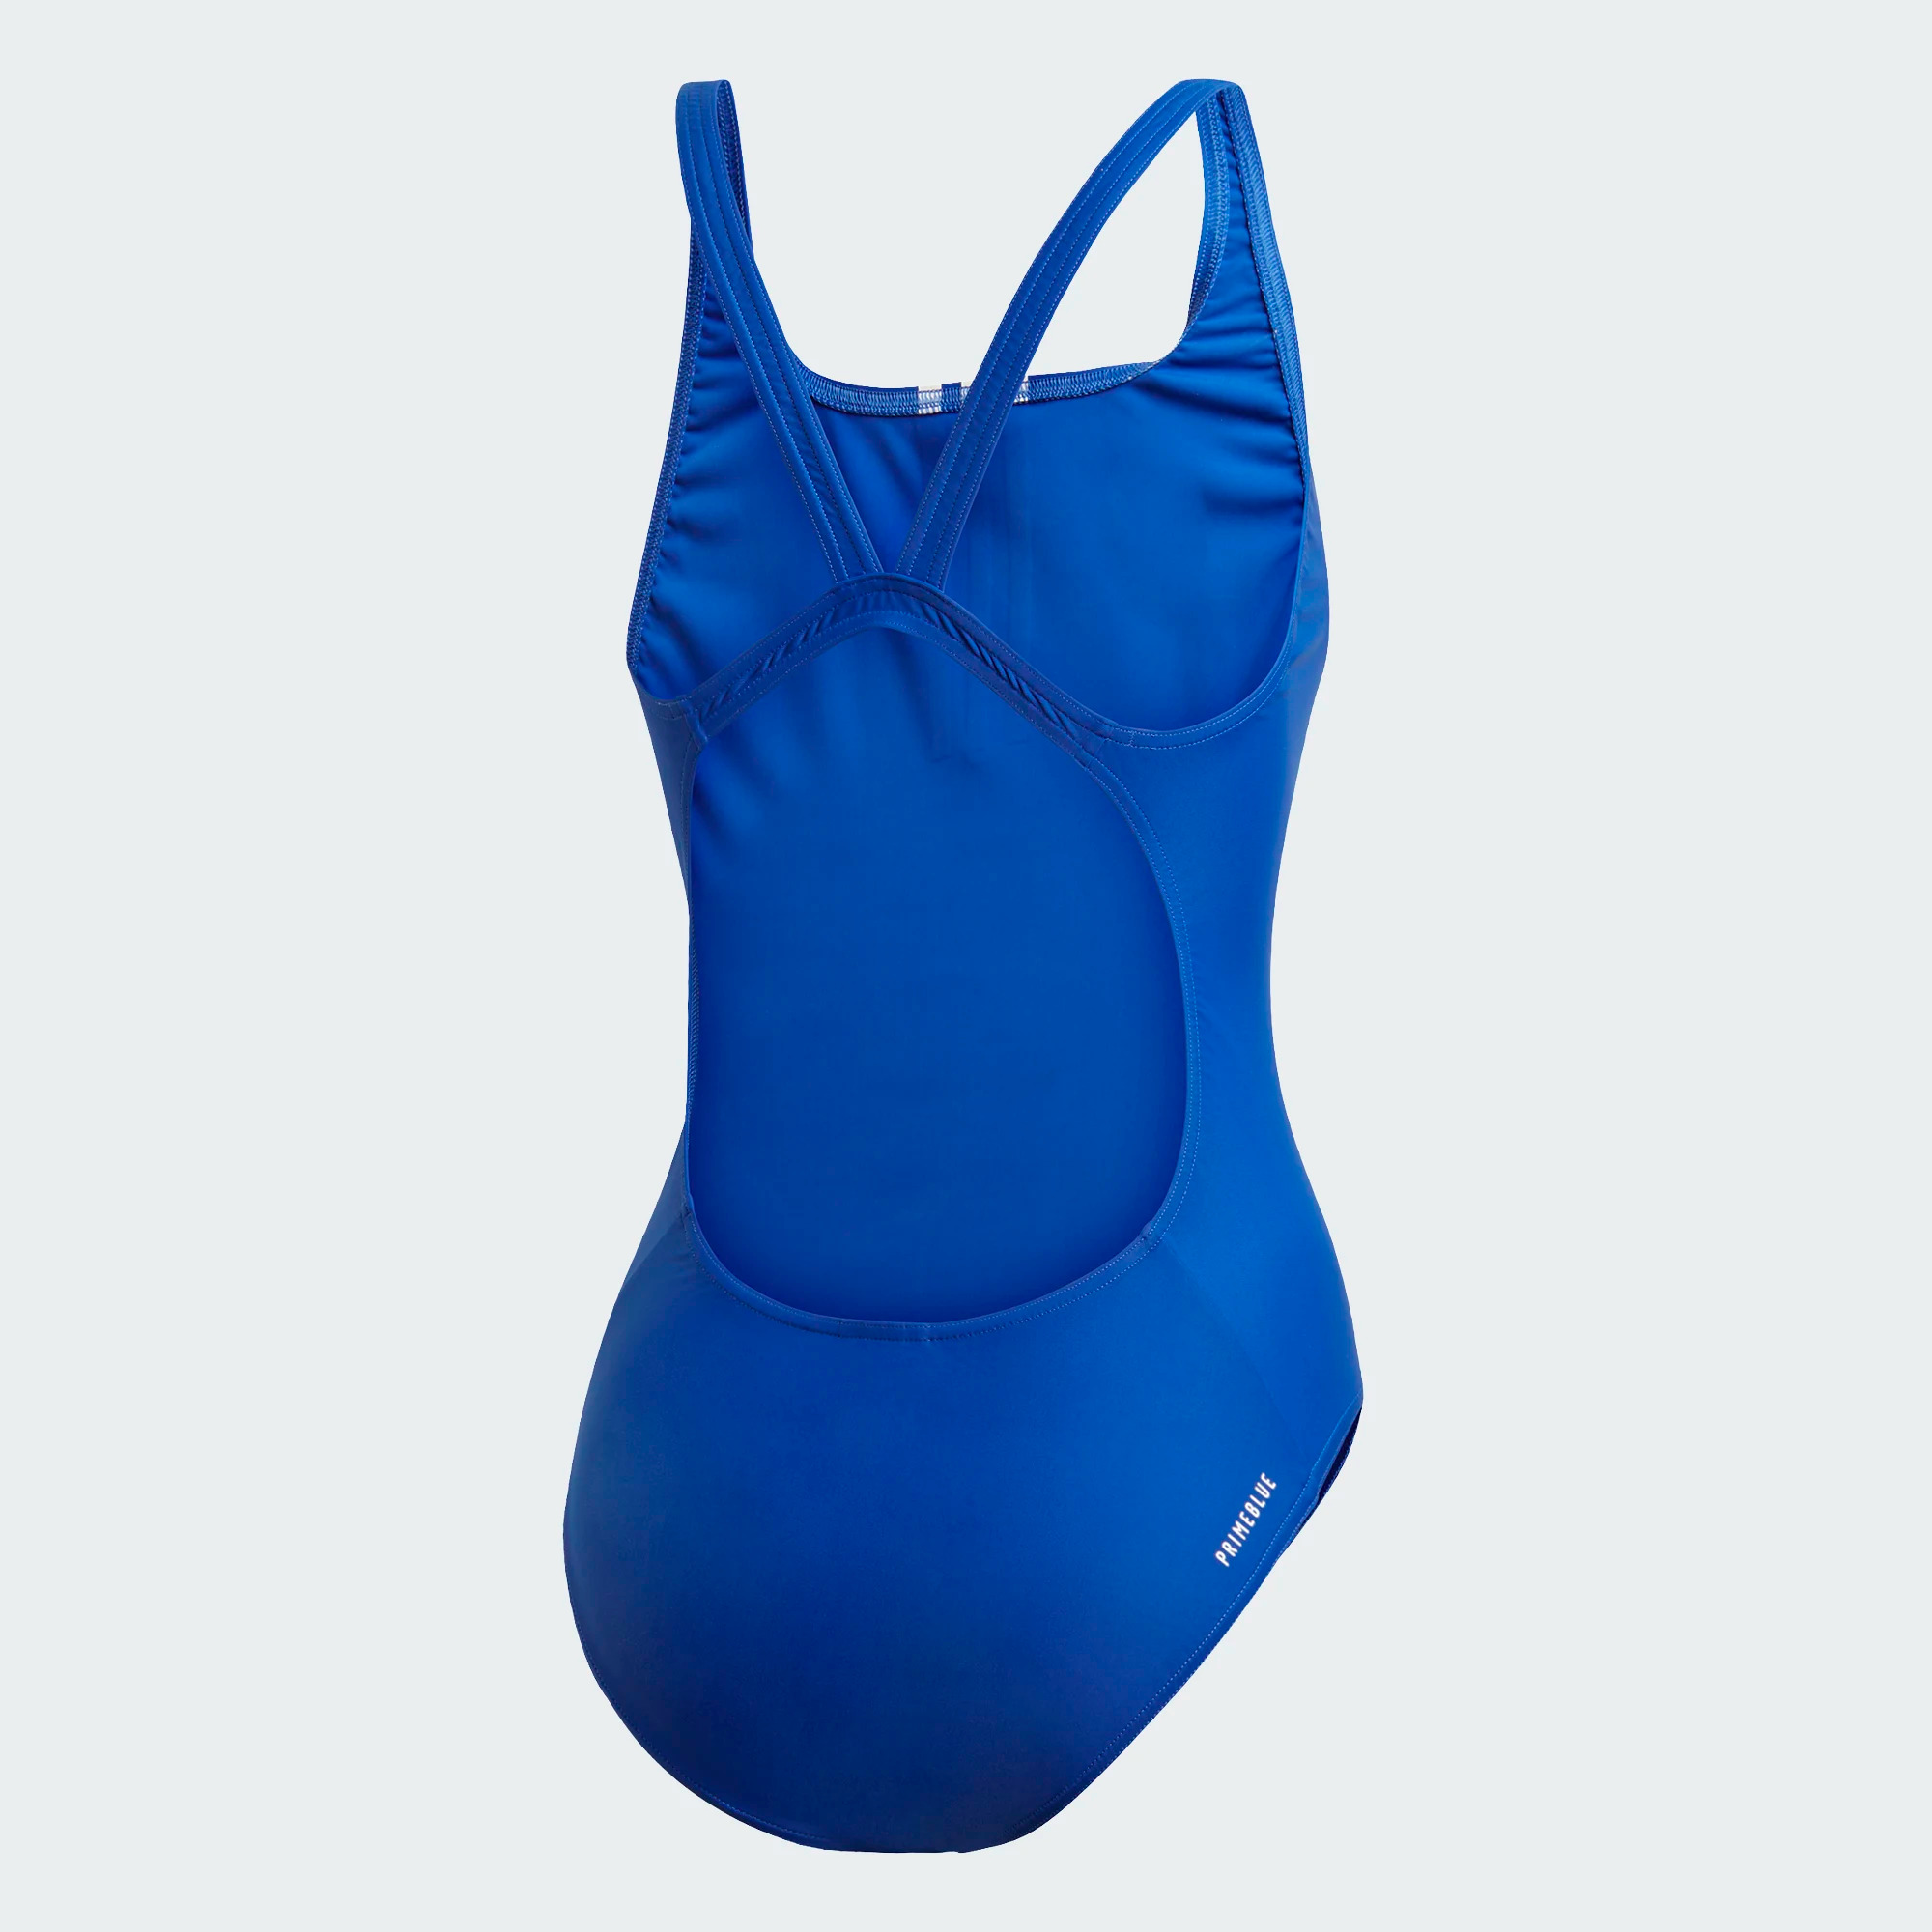 Adidas SH3.RO Mid 3-Streifen Badeanzug - blau/weiß